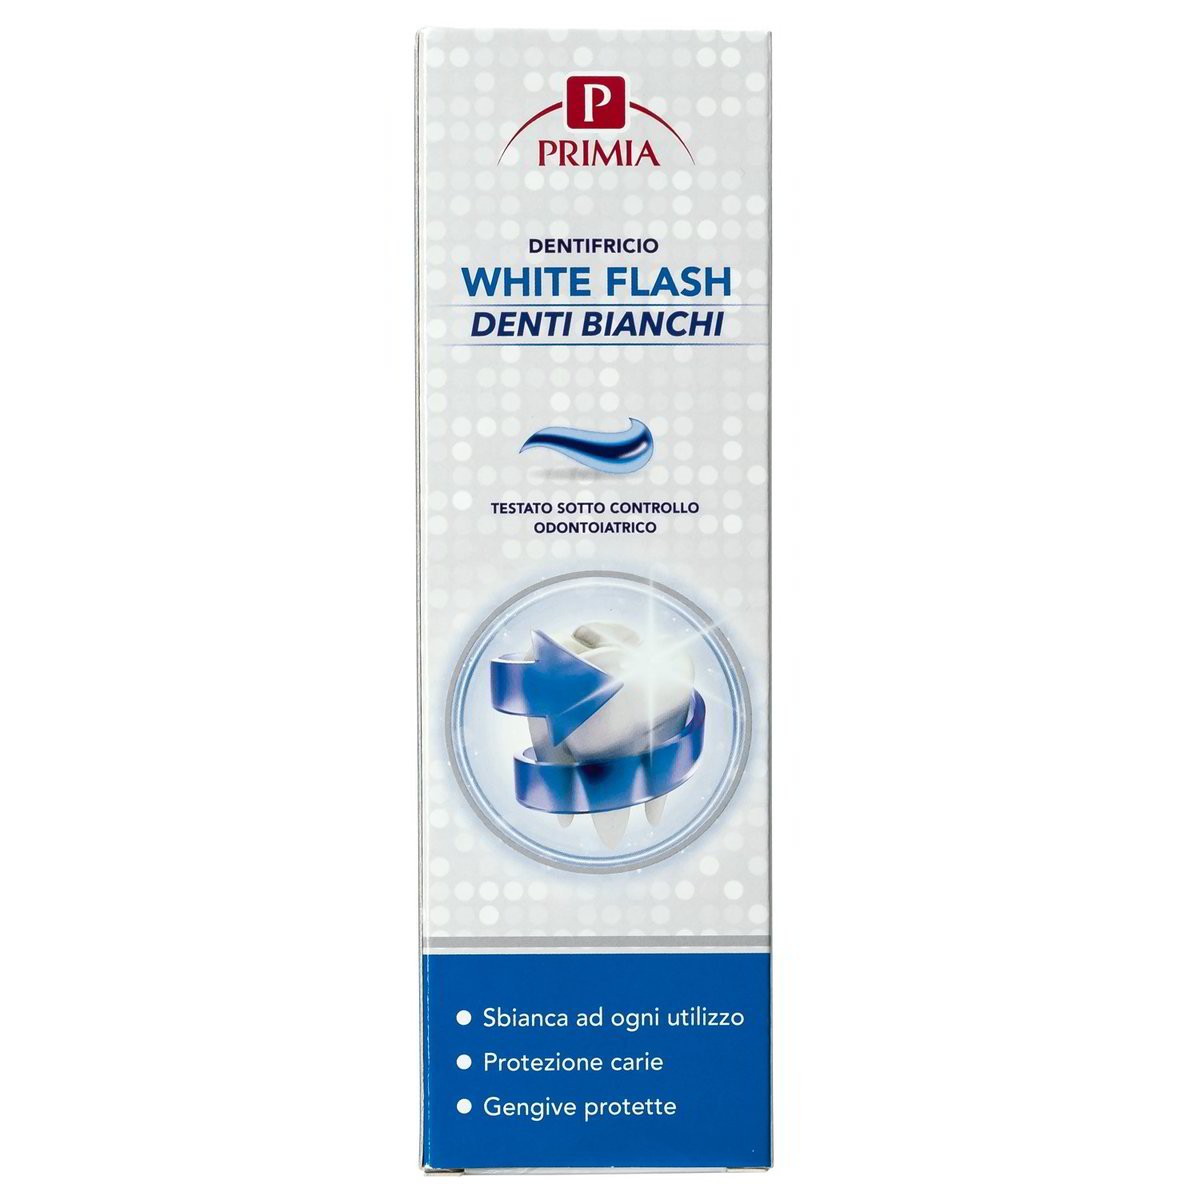 Primia Dentifricio White Flash